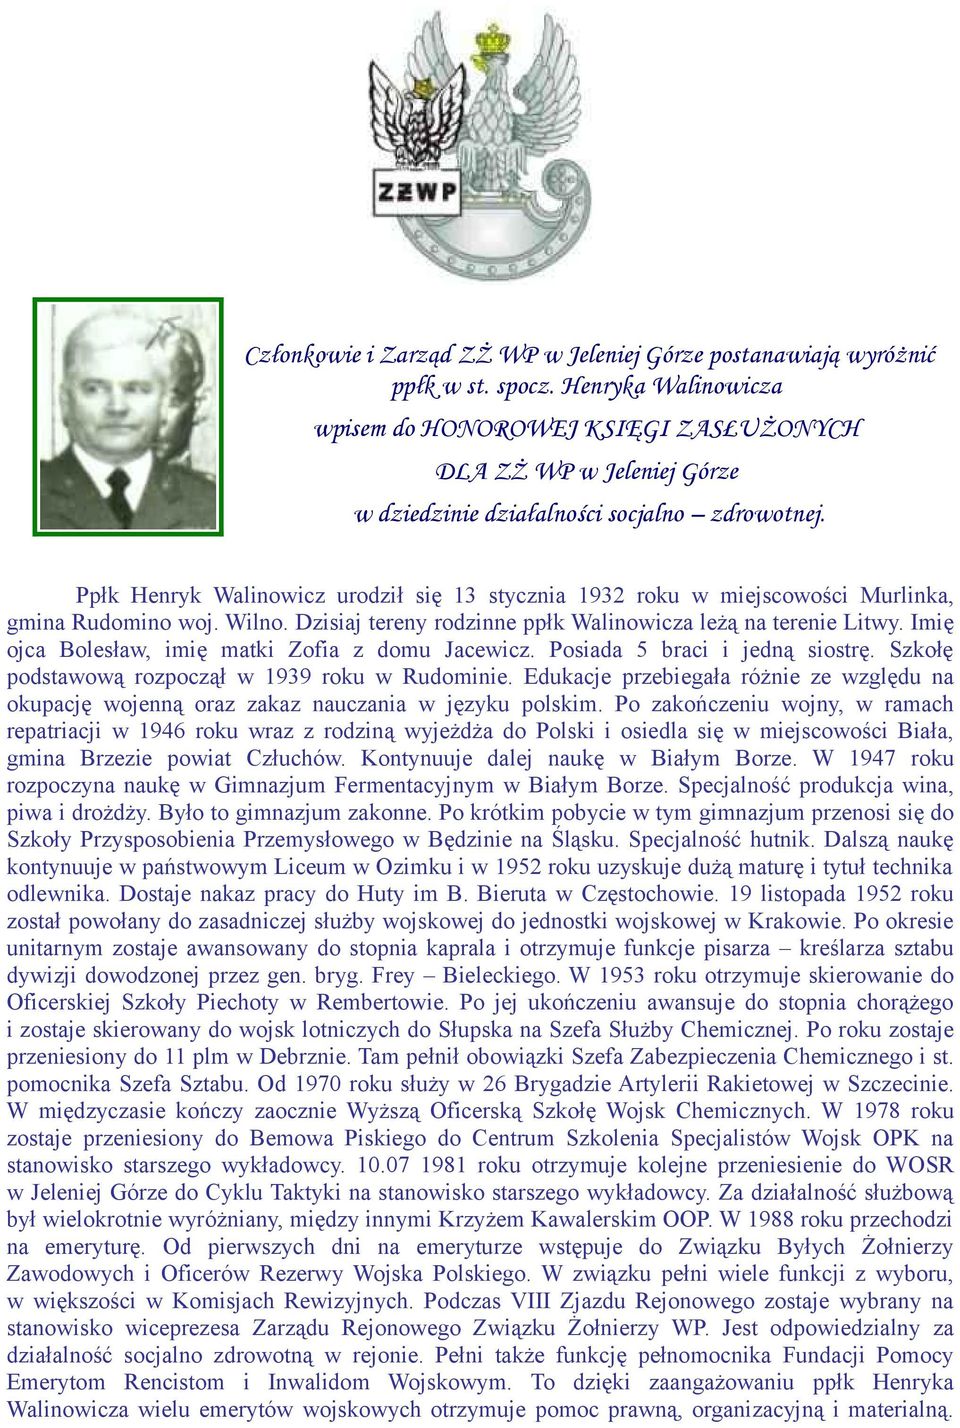 Ppłk Henryk Walinowicz urodził się 13 stycznia 1932 roku w miejscowości Murlinka, gmina Rudomino woj. Wilno. Dzisiaj tereny rodzinne ppłk Walinowicza leżą na terenie Litwy.